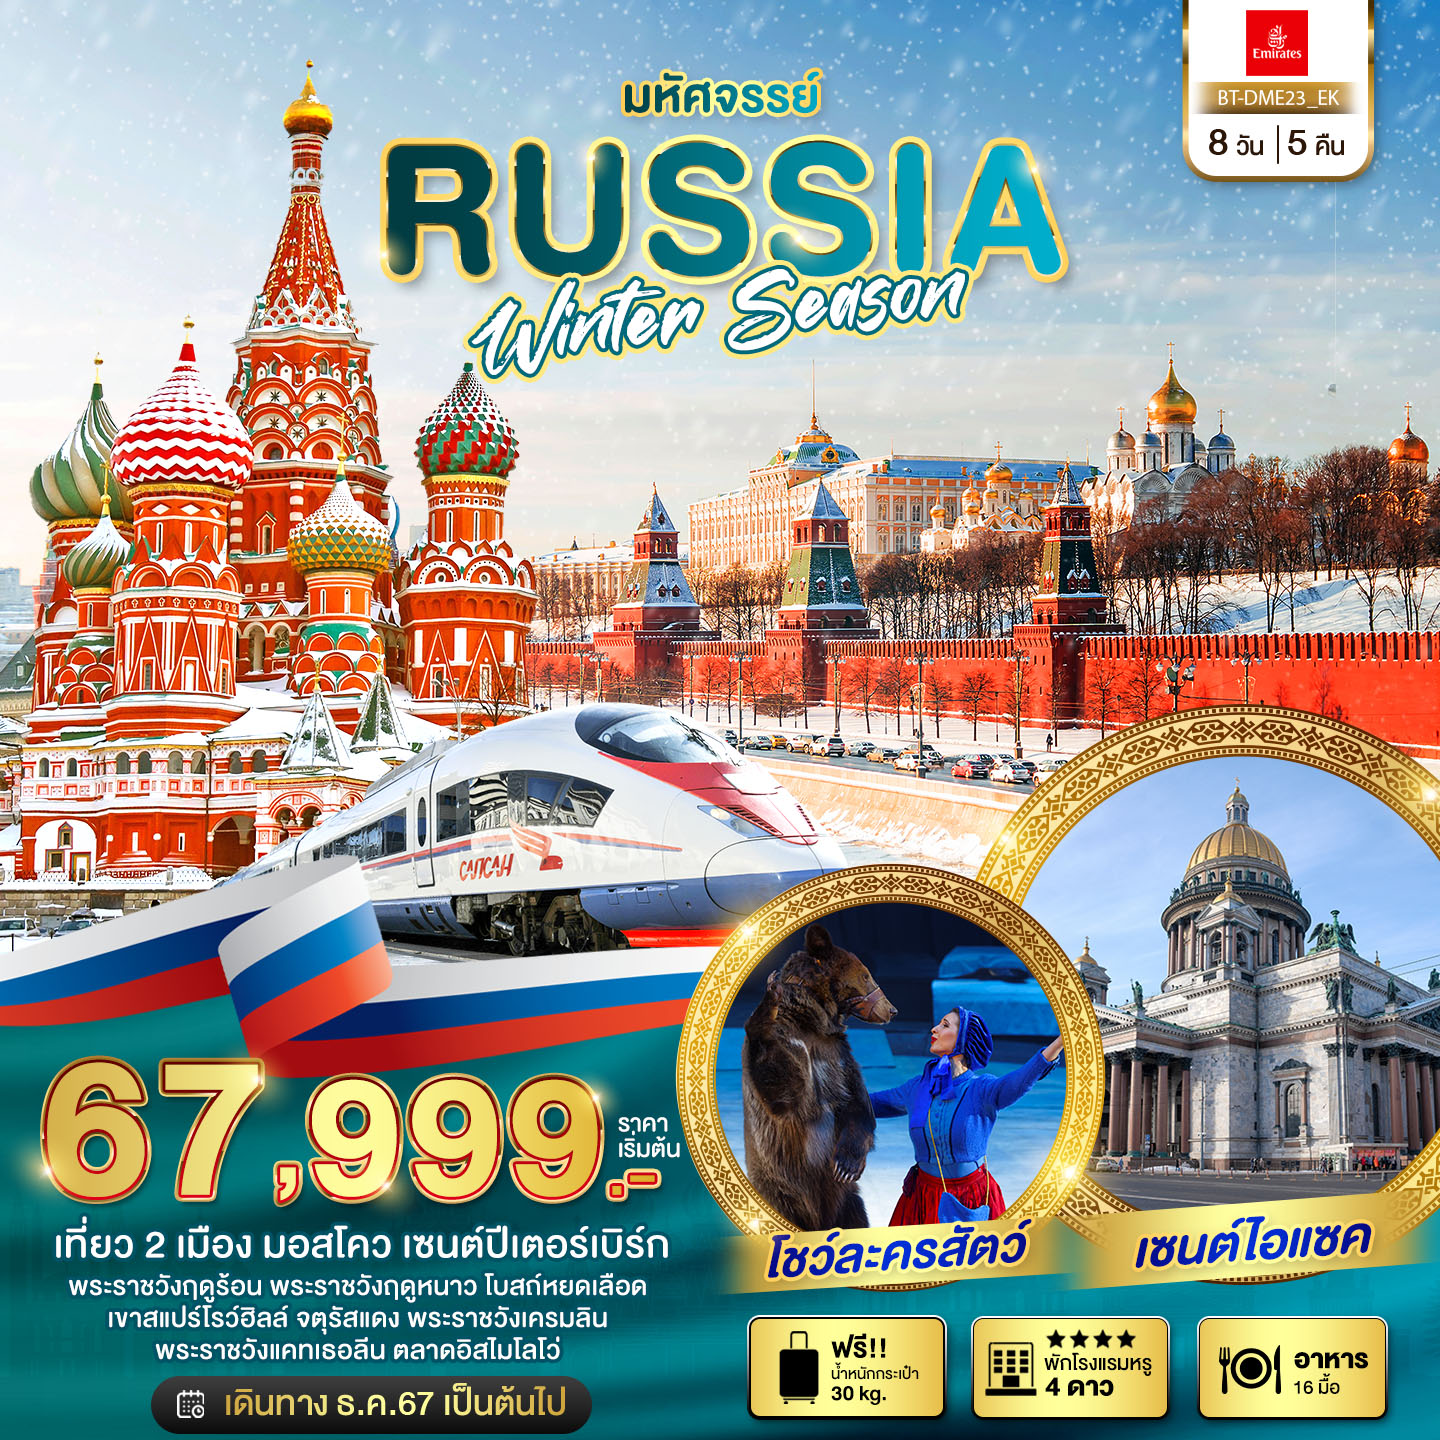 ทัวร์รัสเซีย มหัศจรรย์ มอสโคว เซนต์ปีเตอร์เบิร์ก WINTER SEASON 8 วัน 5 คืน